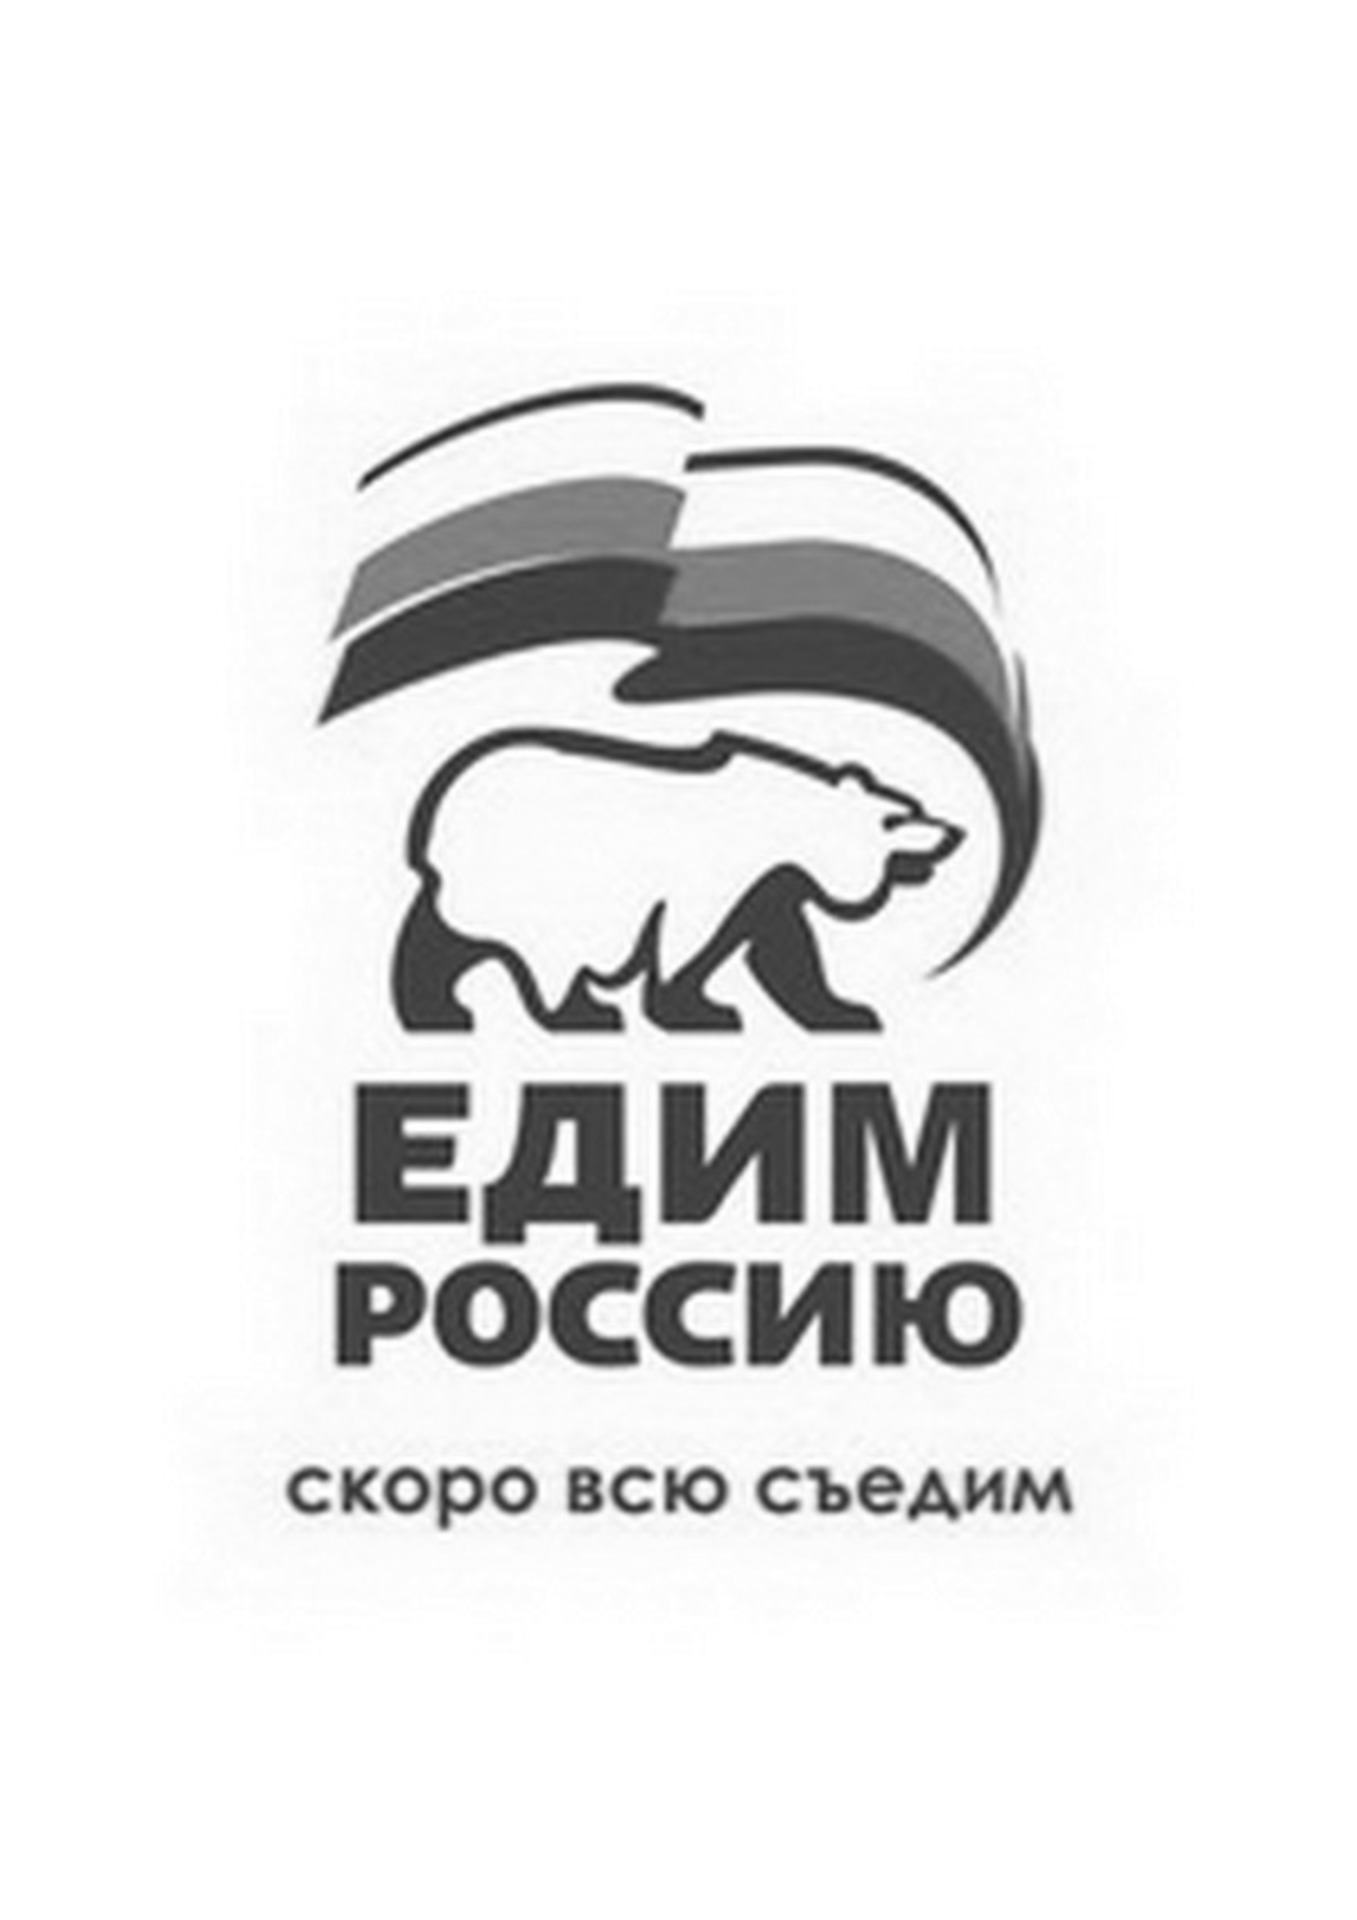 Плакат Единая Россия партия жуликов